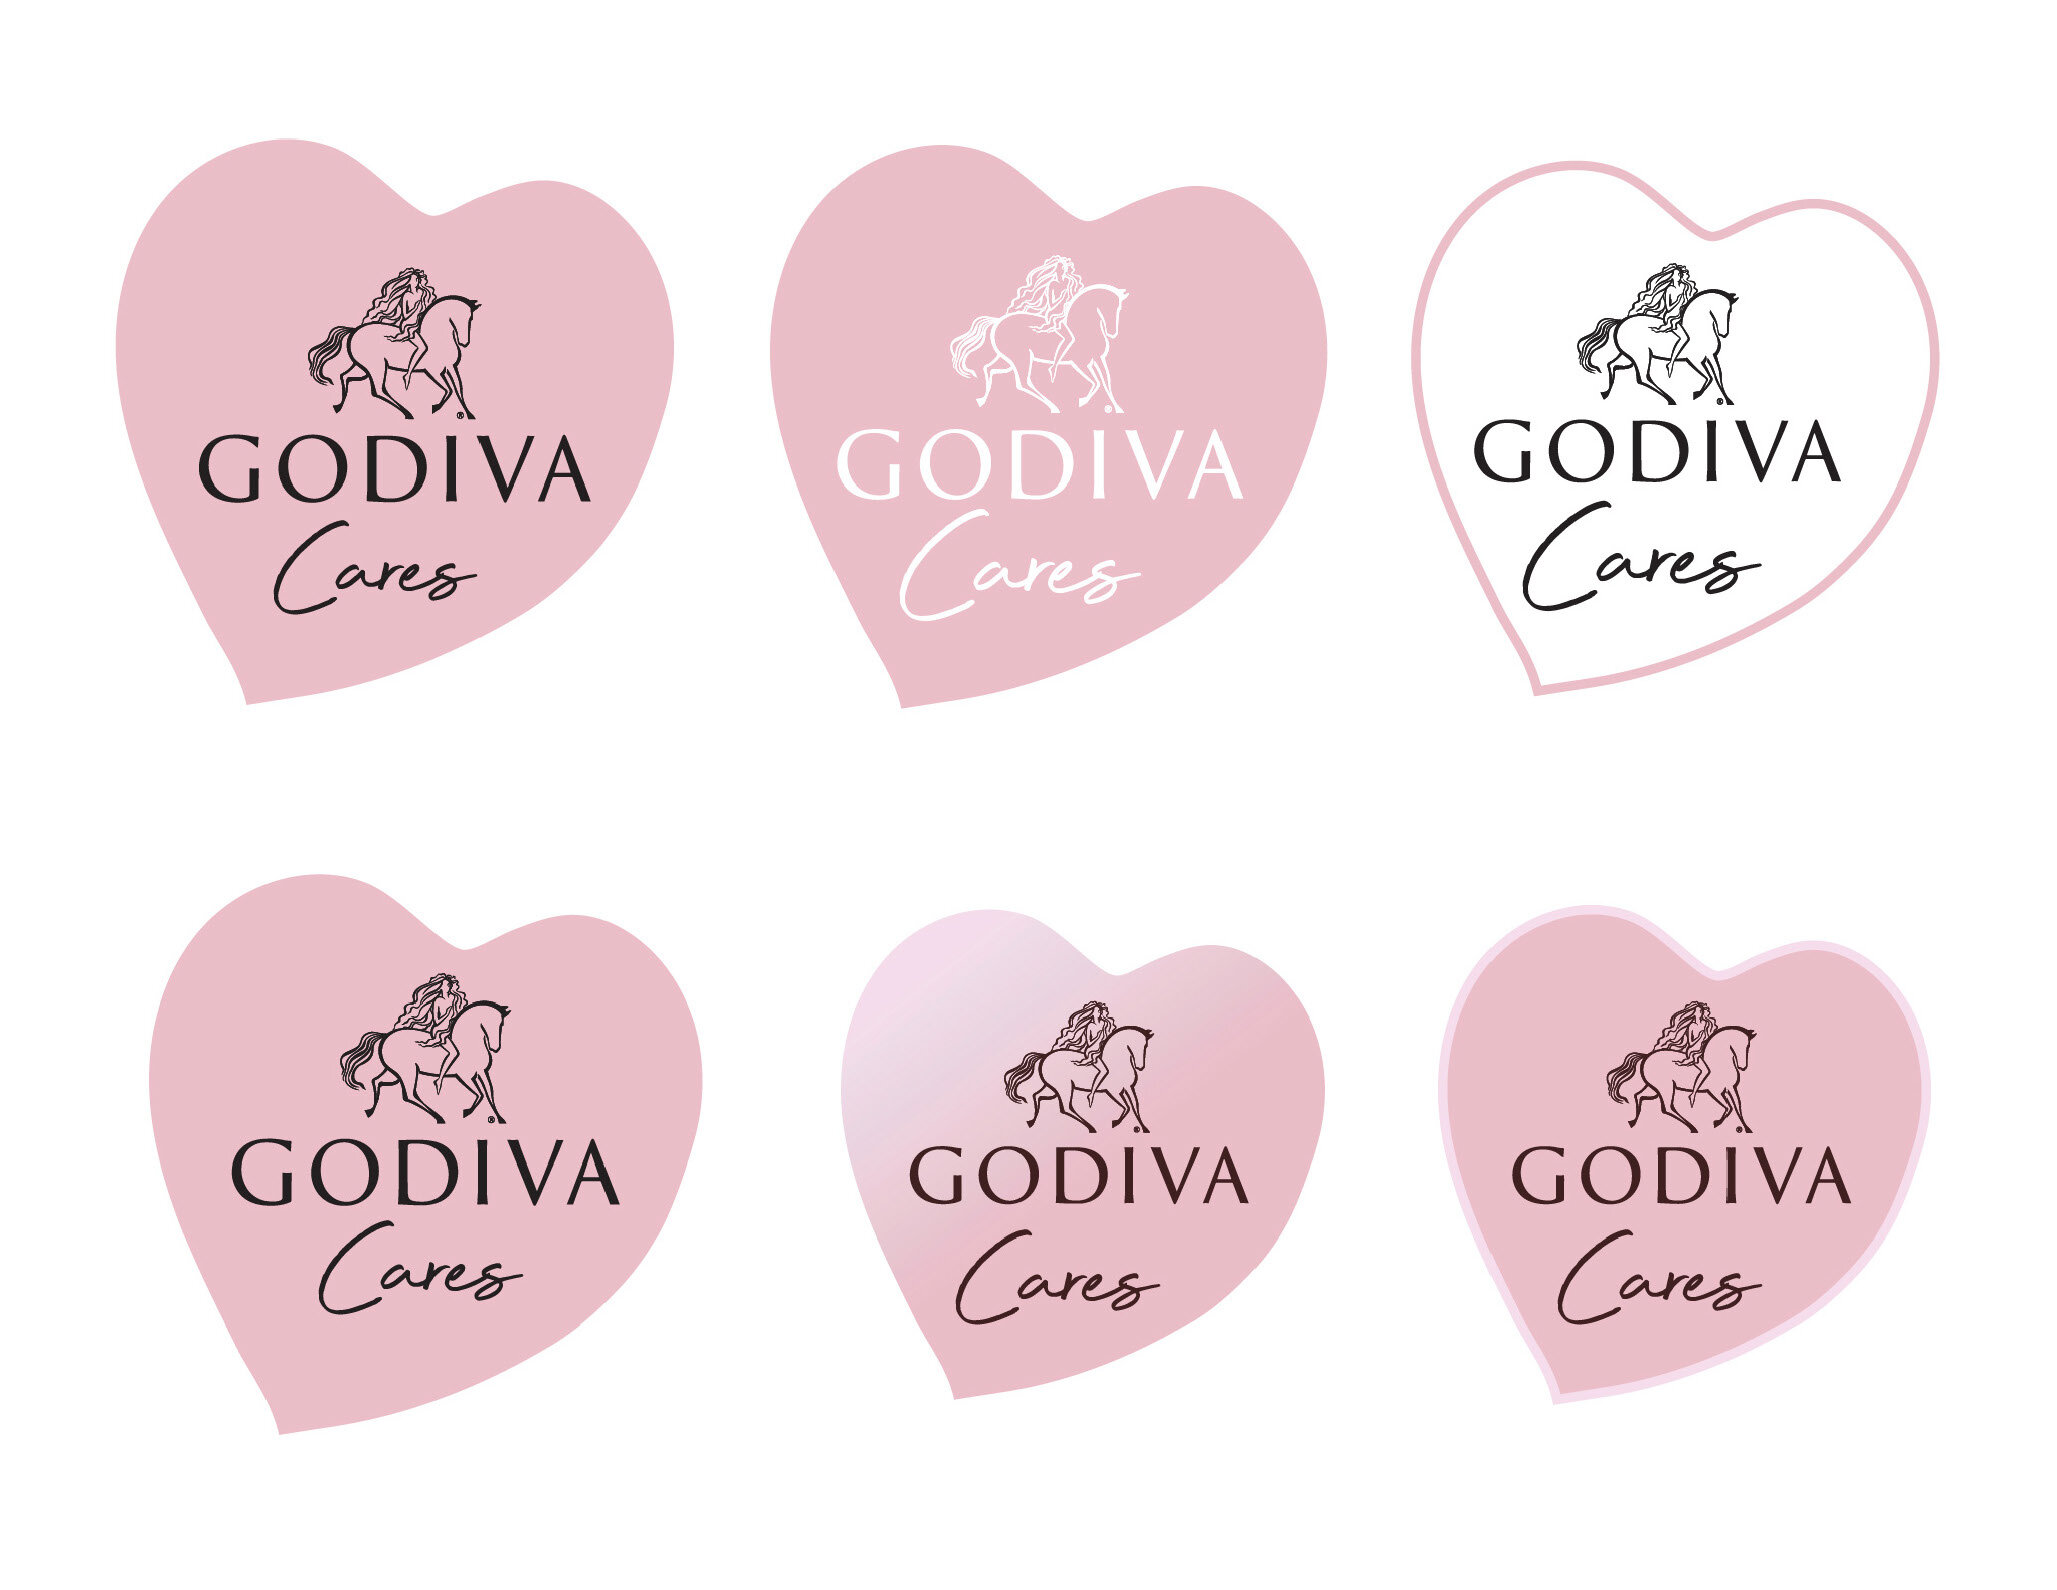 Godiva cares logo hearts only.jpg